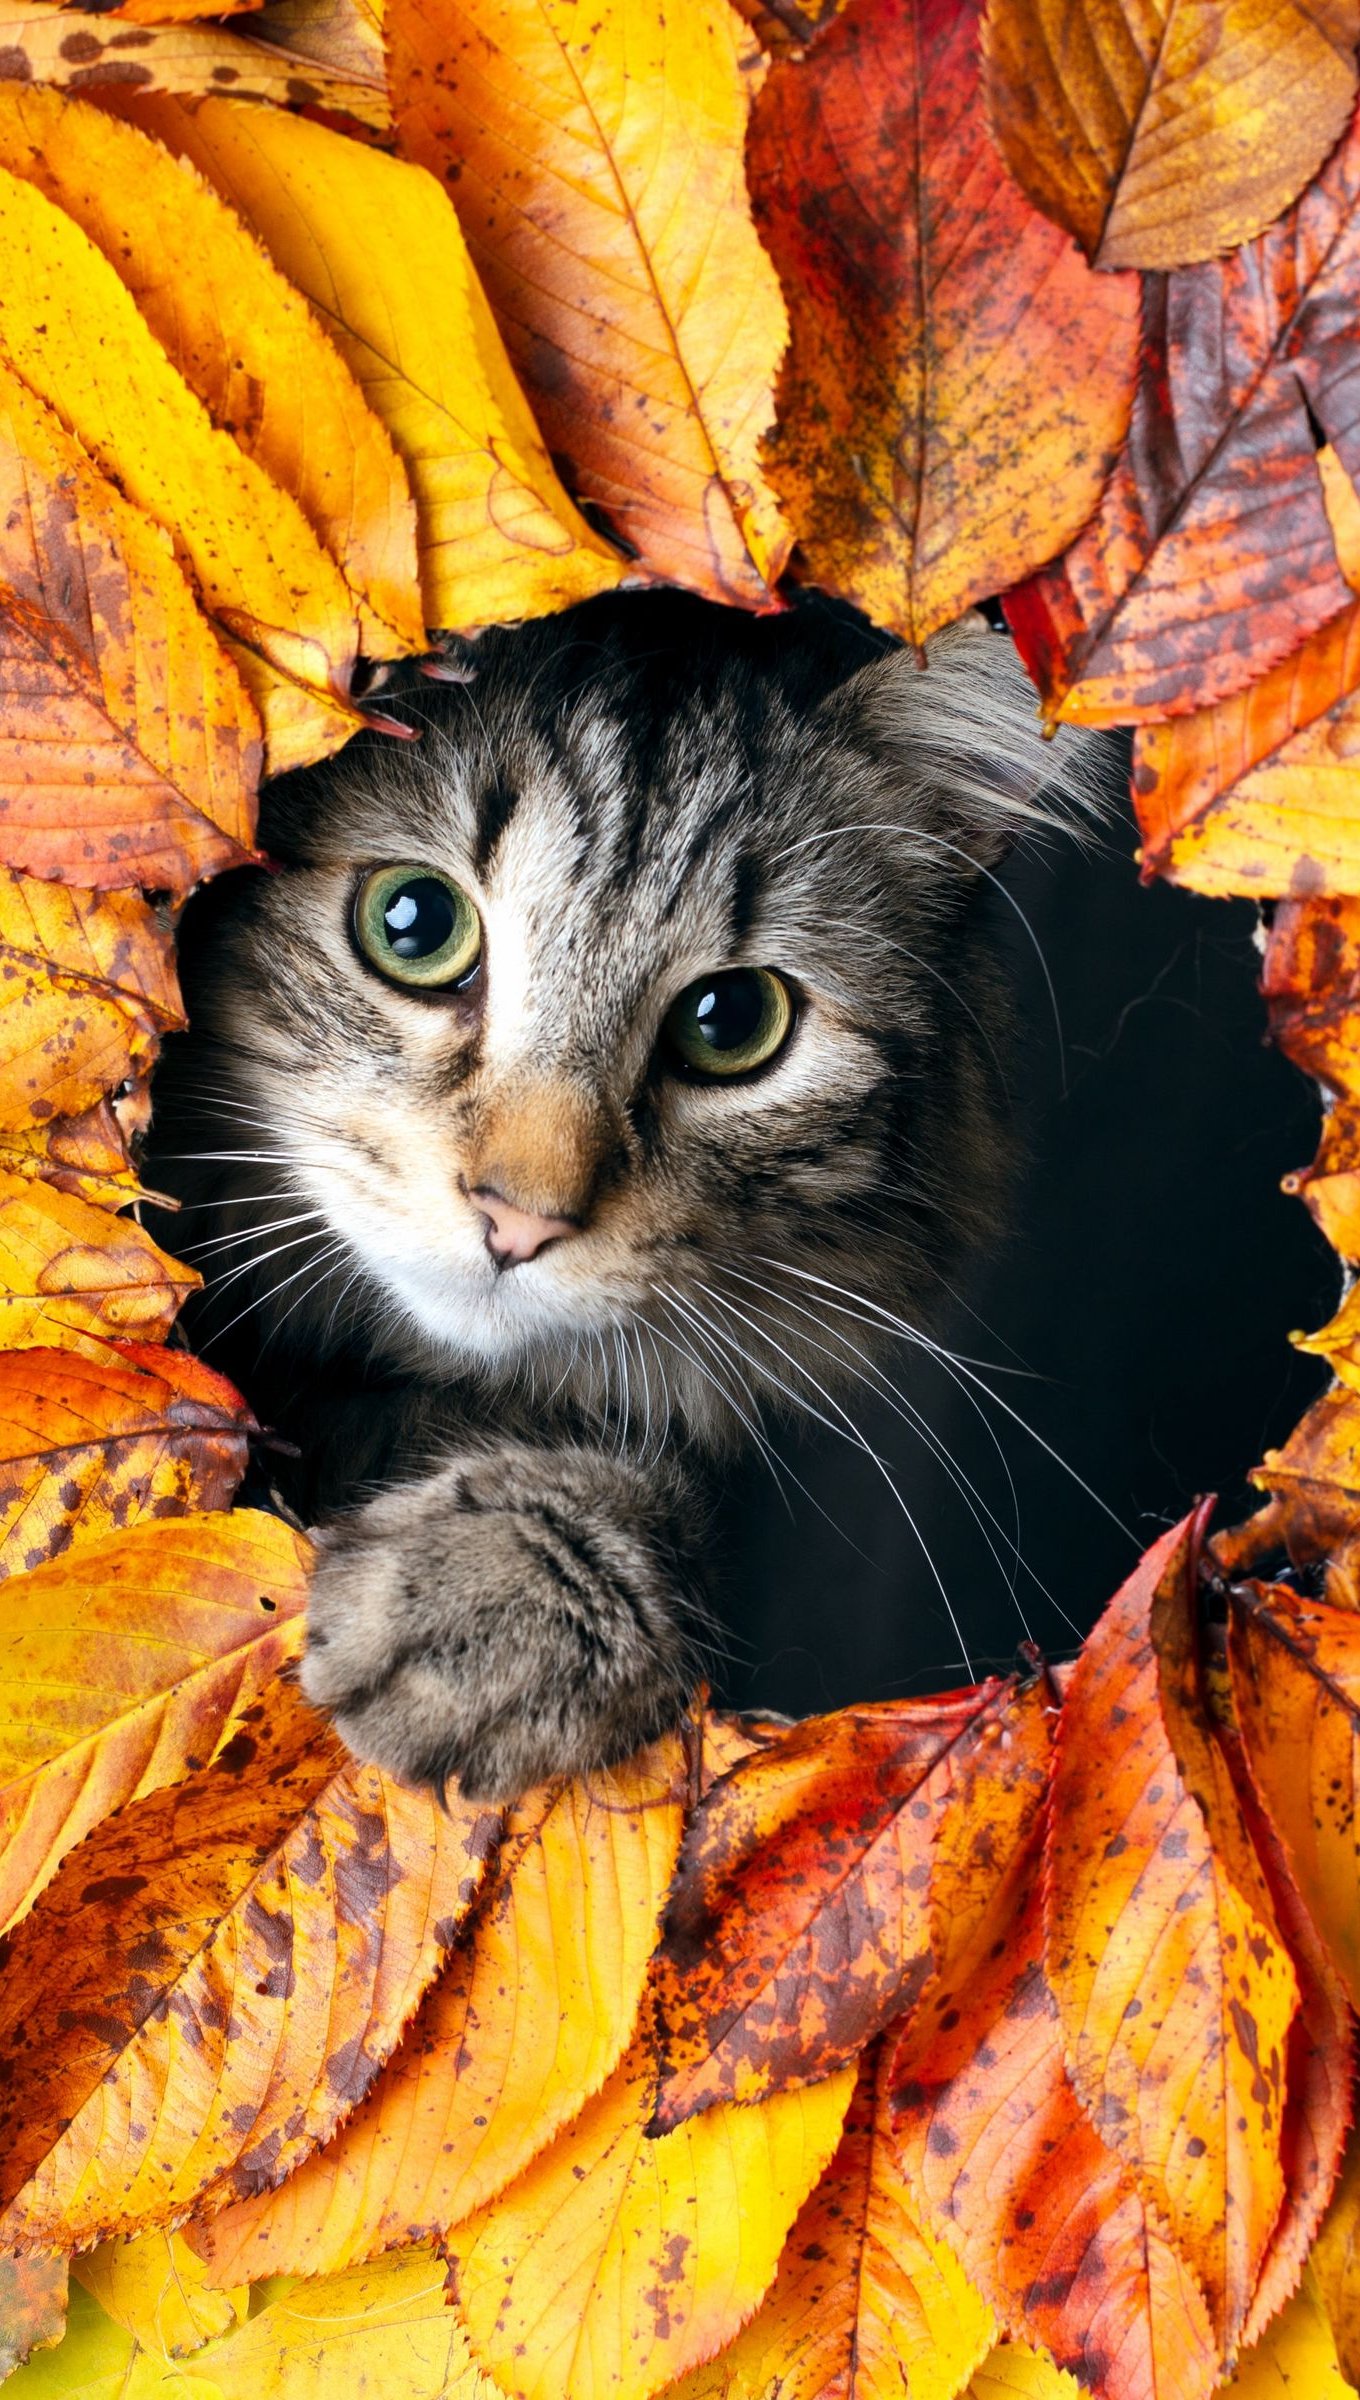 Kitten in autumn leaves Wallpaper 4k Ultra HD